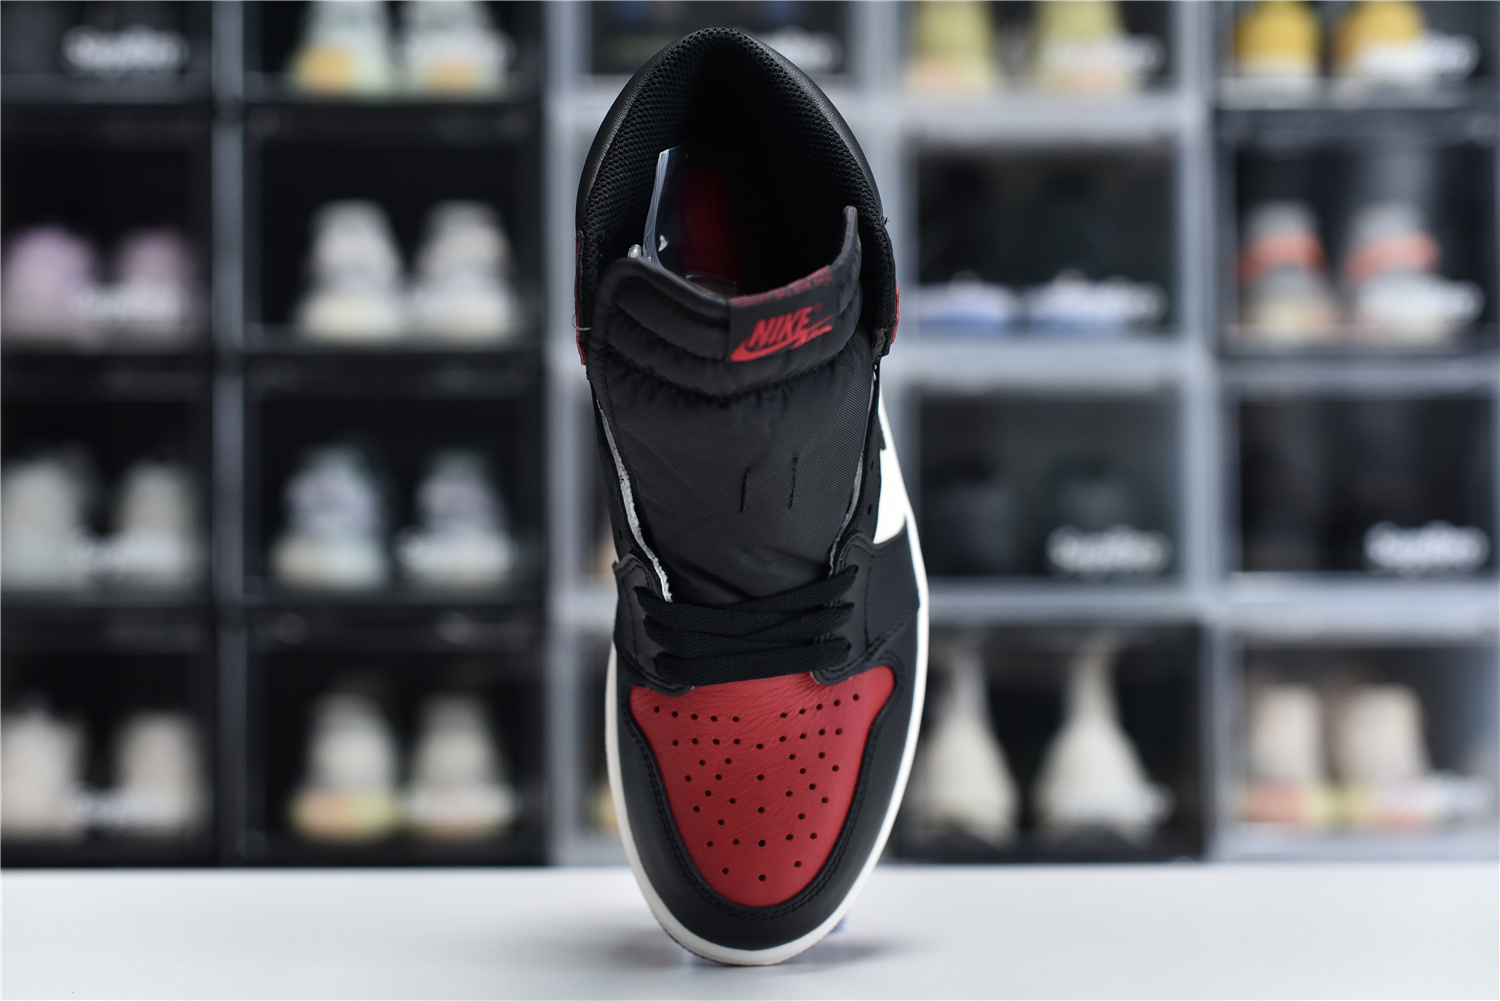 Nike Air Jordan 1 Retro High Og Red Black White Men Sneakers 555088 610 Kickbulk 5 - www.kickbulk.org